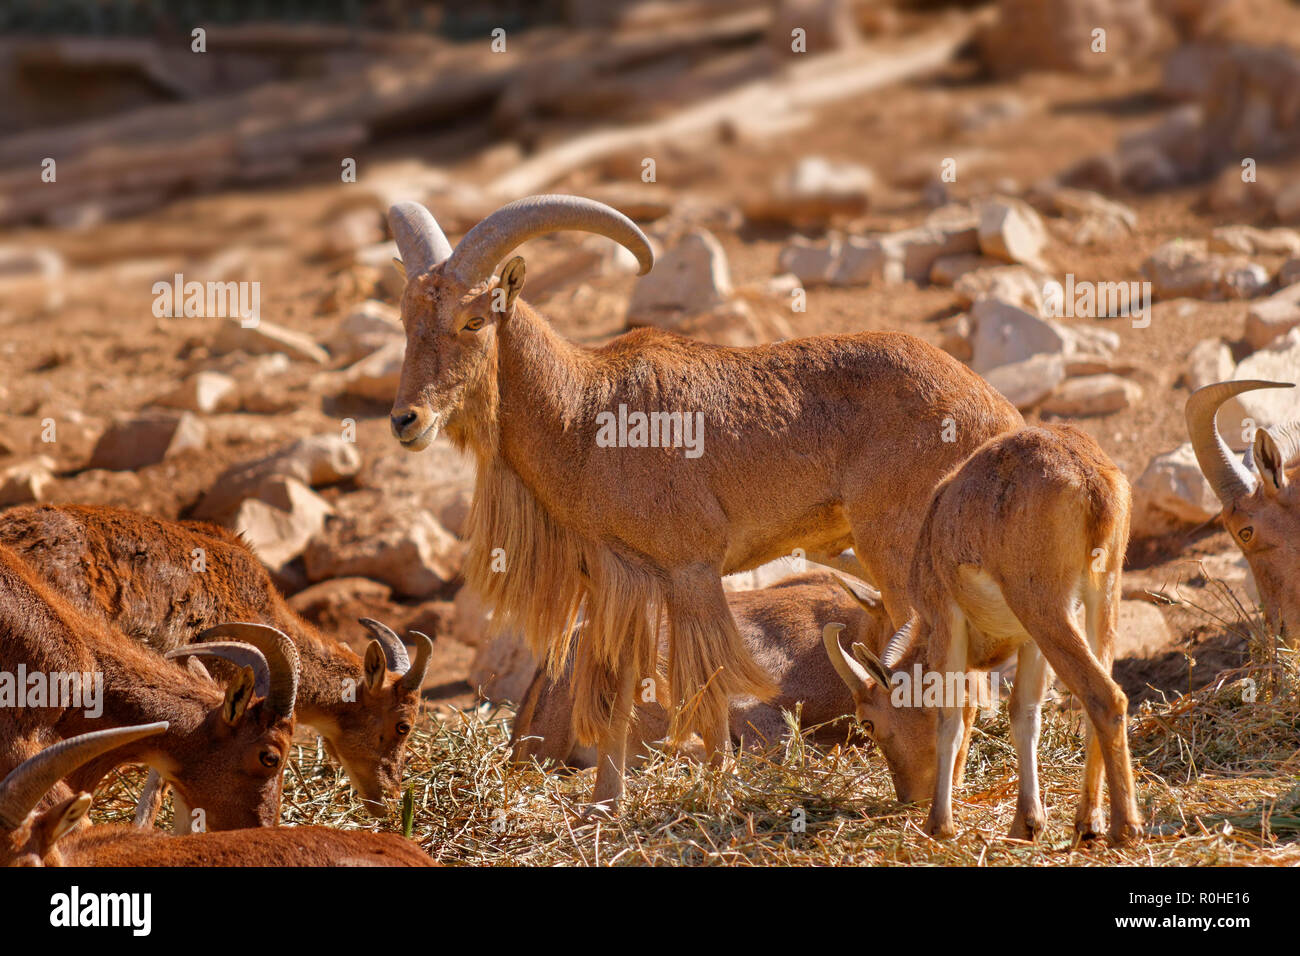 Mähnenspringer, eine Ziege/Antilope Gattung in Nordafrika gefunden. Stockfoto